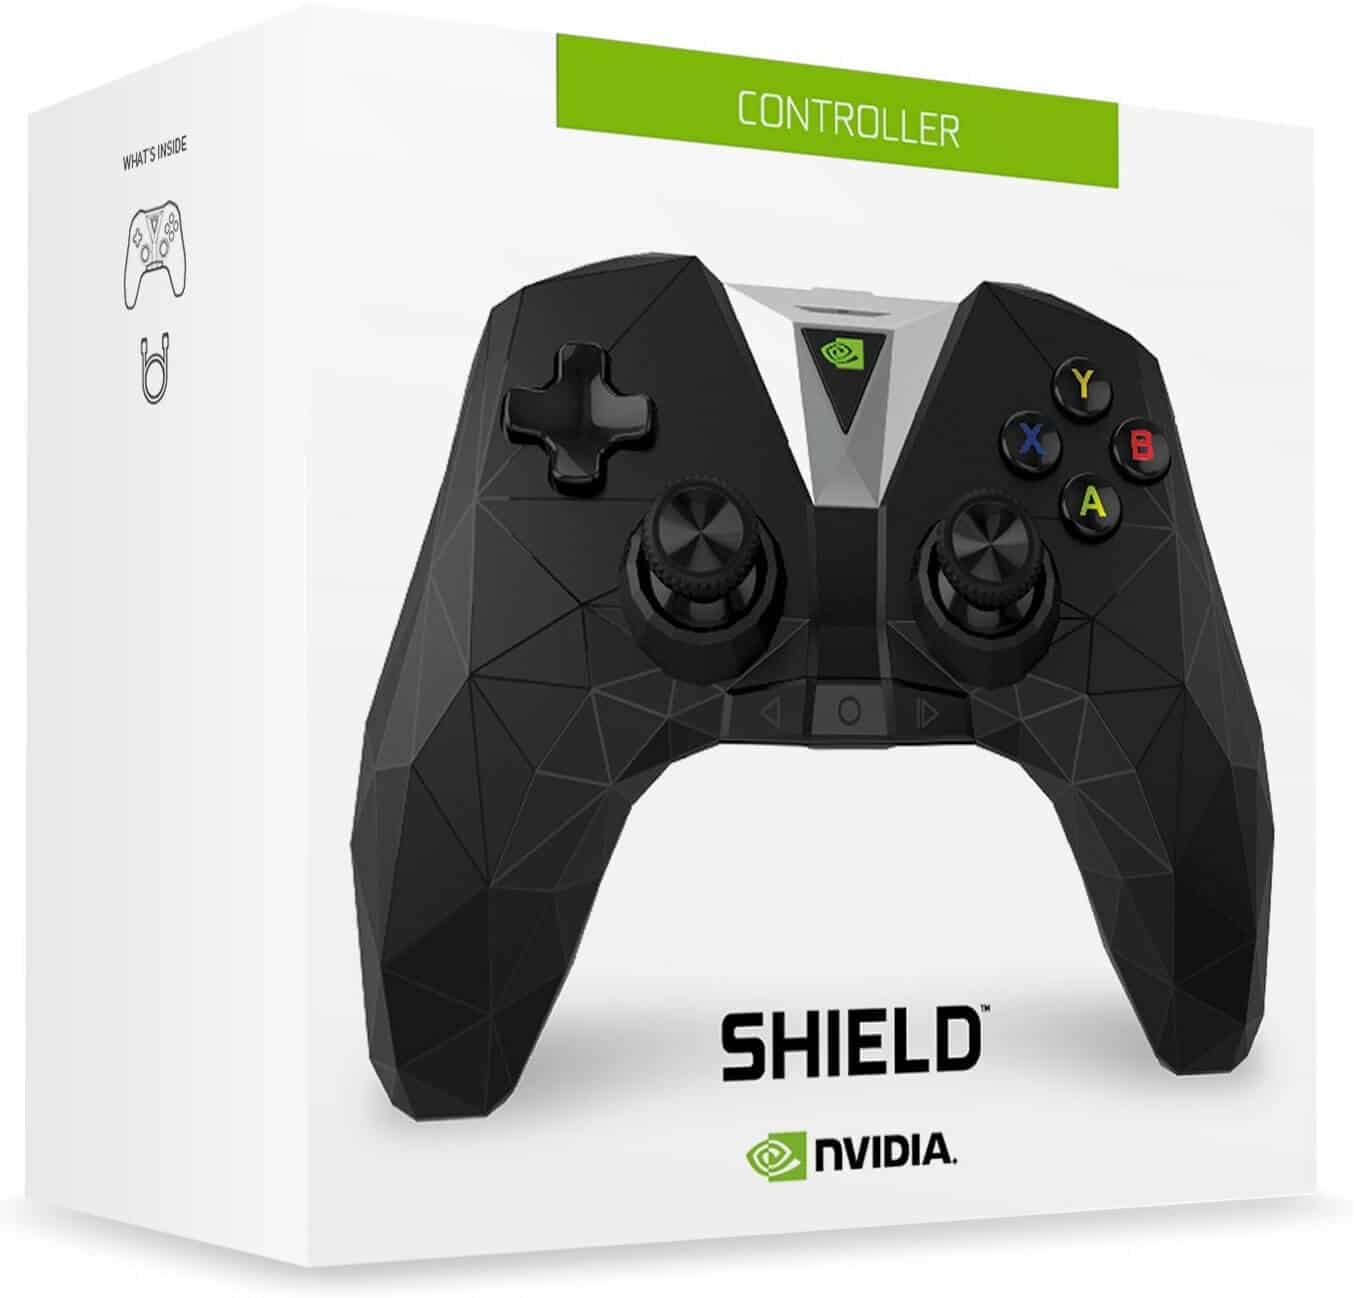 nvidia shield controller compatibility